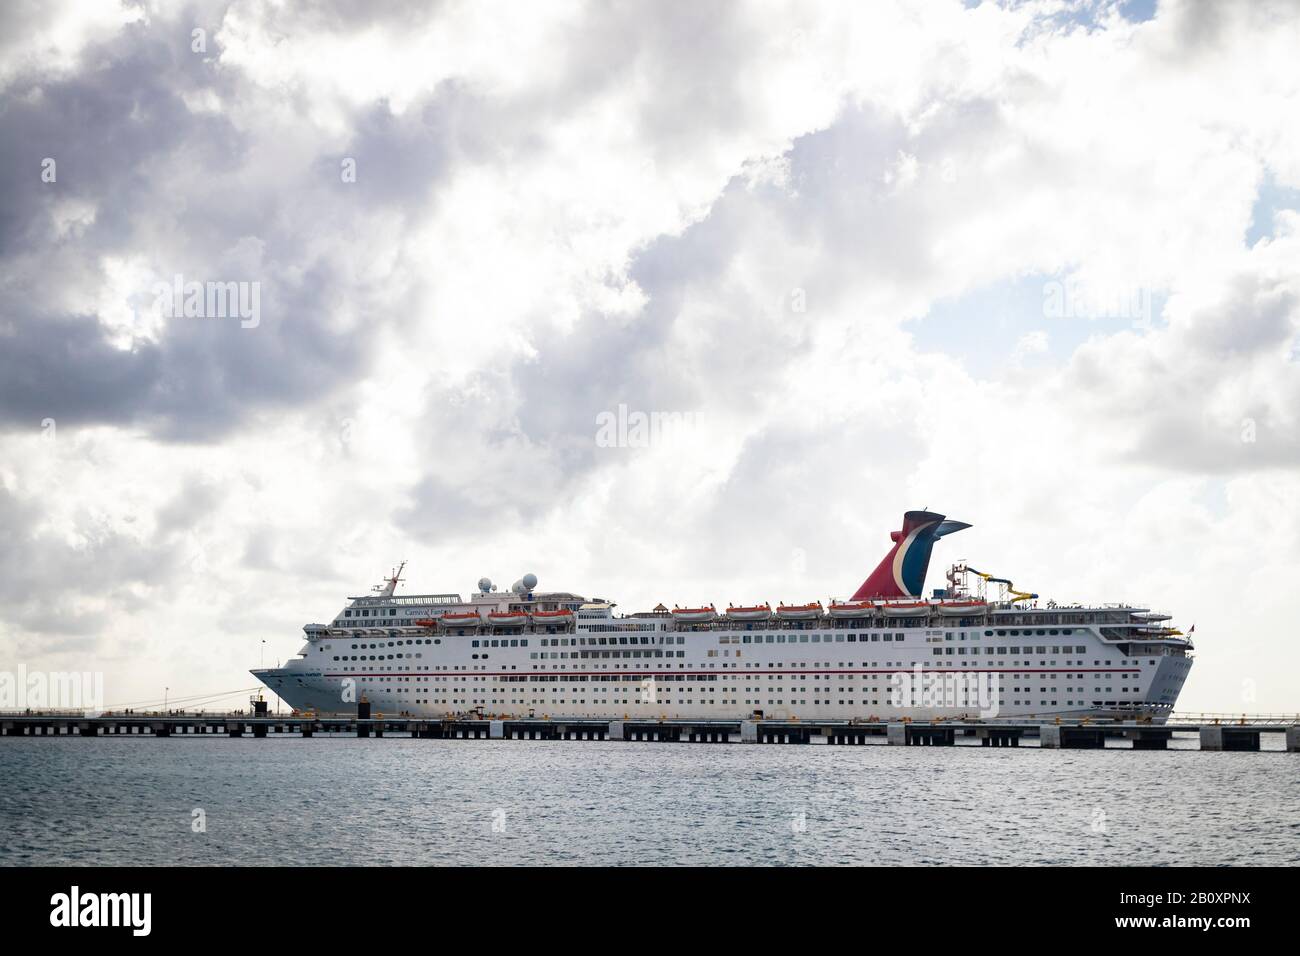 Vista lejana del crucero 'Carnaval Fantasy', en el puerto de Cozumel bajo el cielo nublado Foto de stock